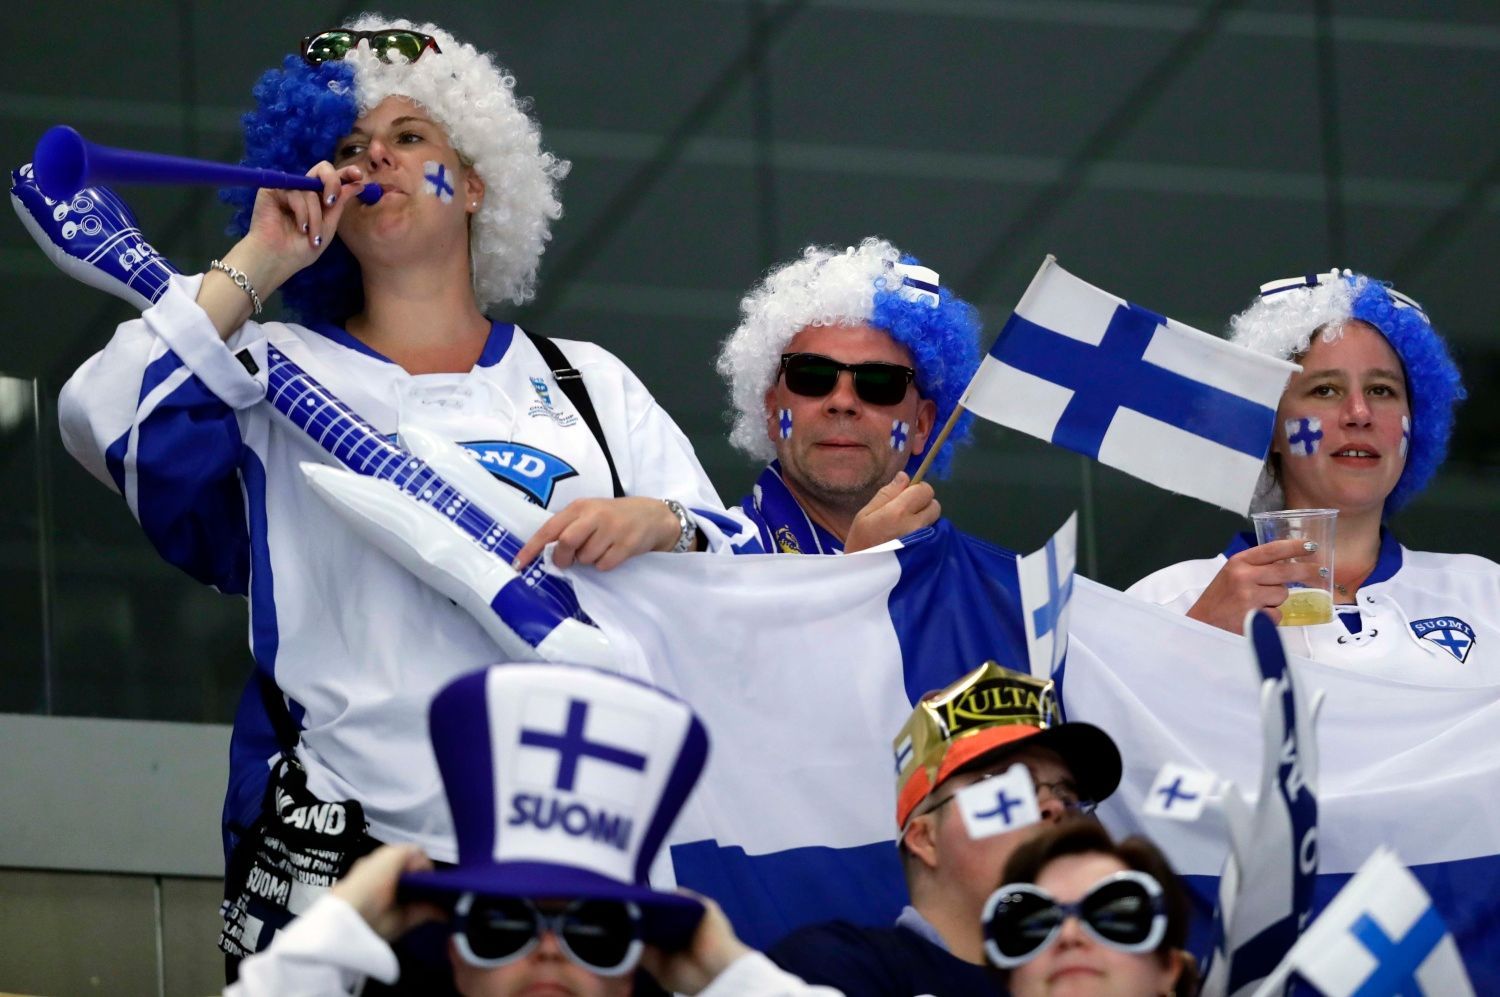 MS 2018, Lotyšsko-Finsko: finští fanoušci